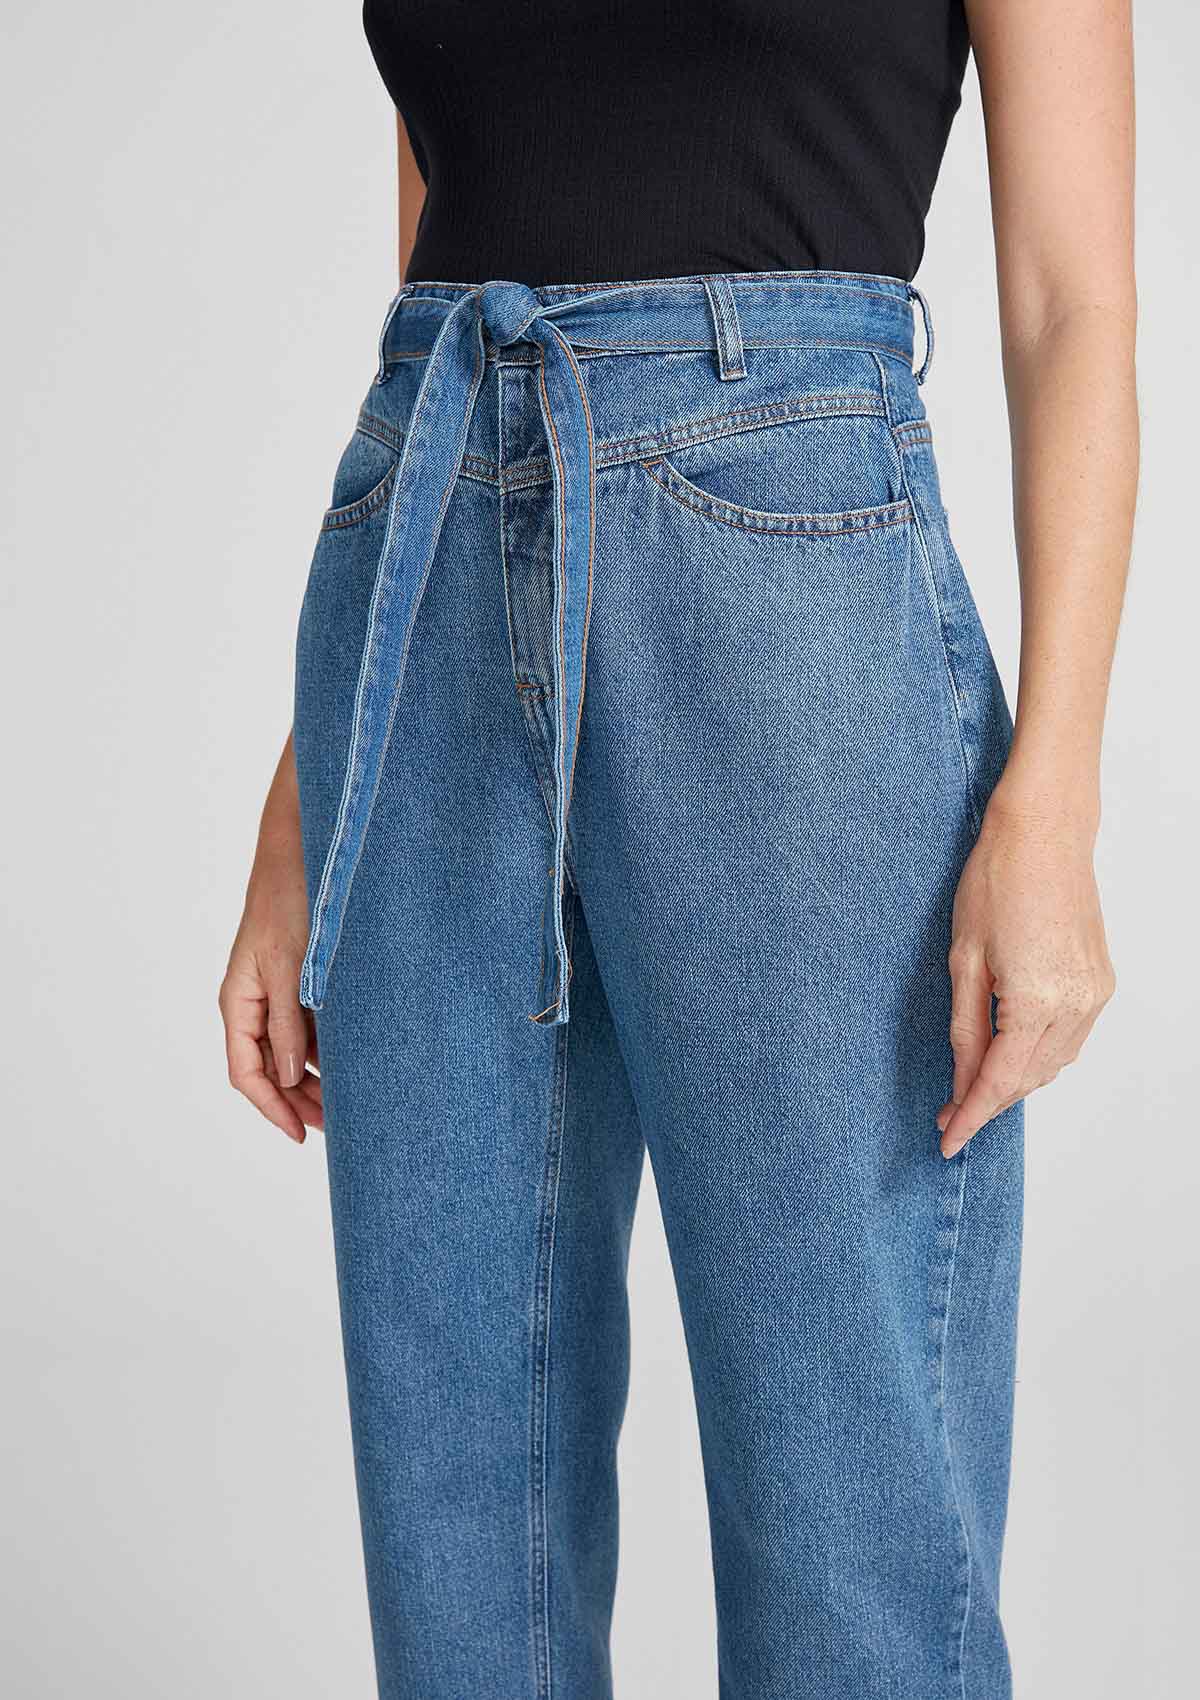 Jeans Feminina Cintura Alta Reta Algodão Store